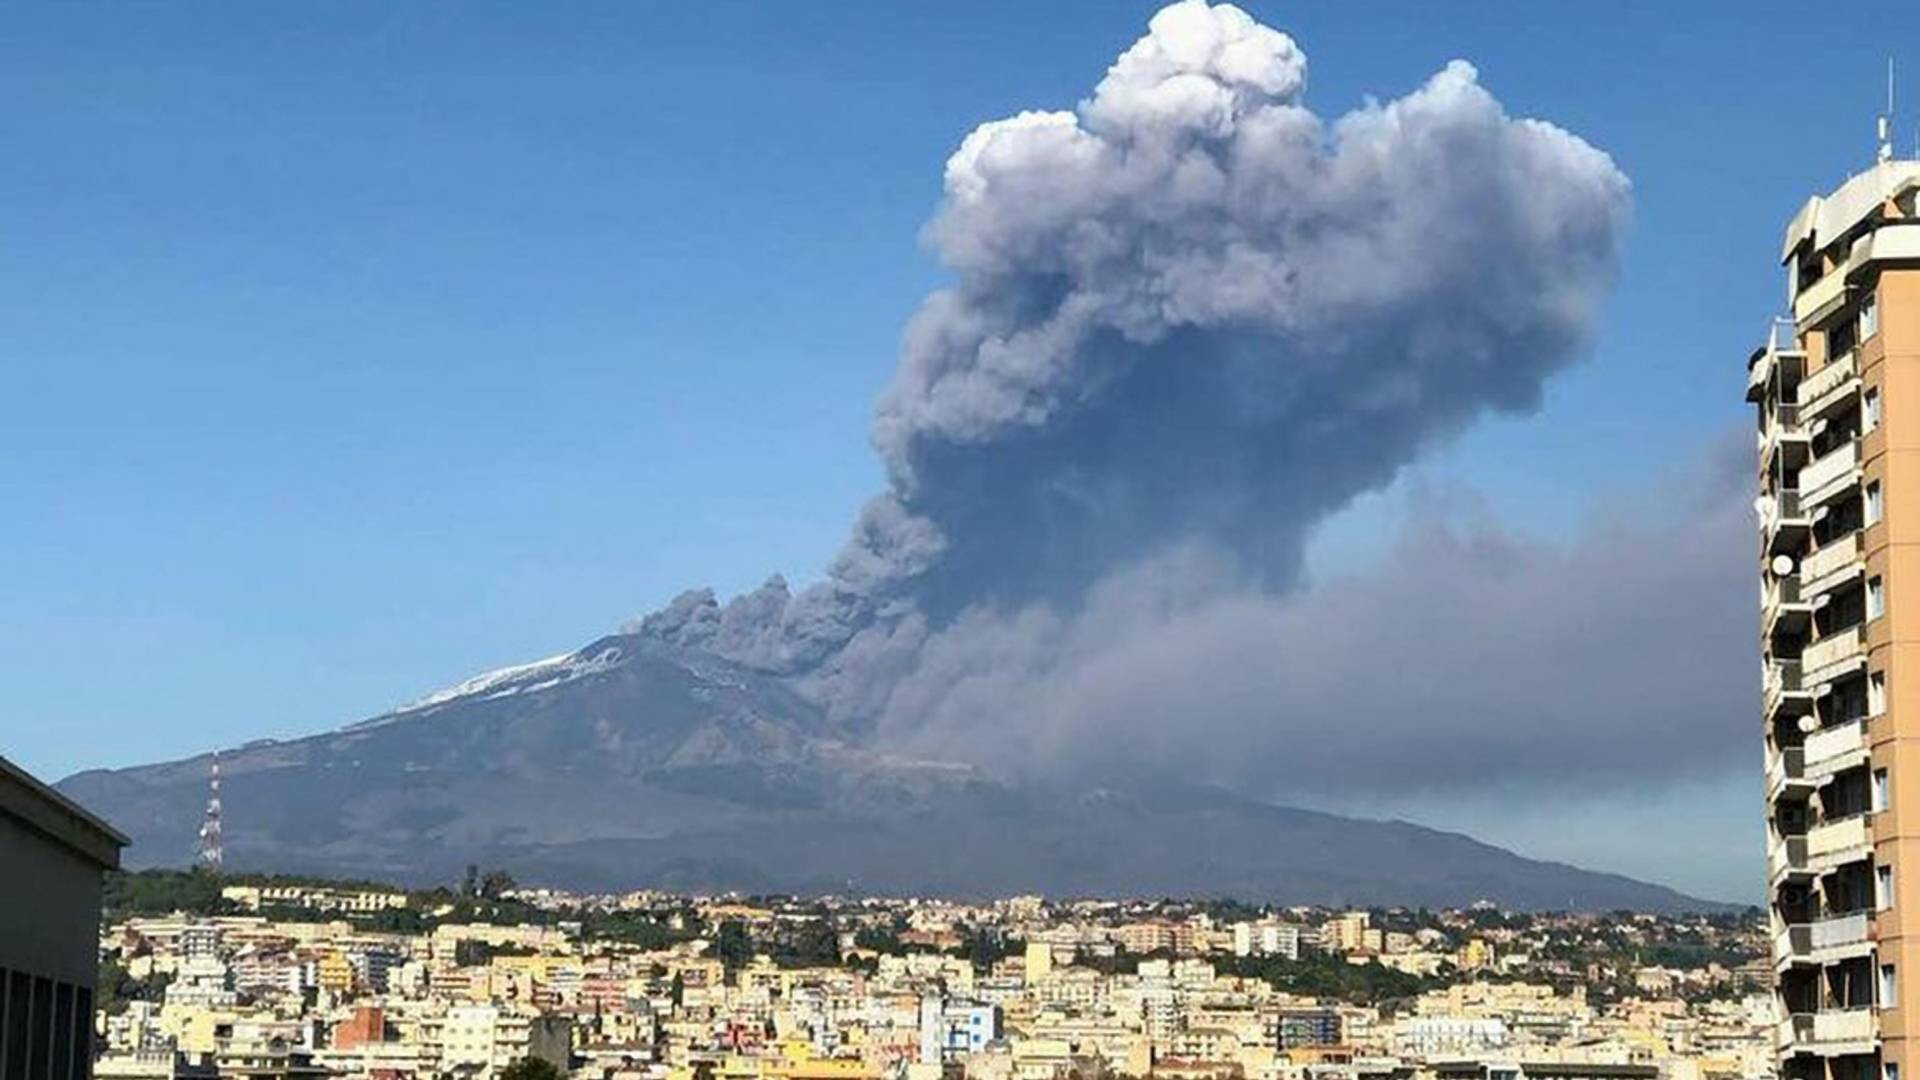 11 fotki erupcije Etne demonstriraju koliko je čovek sitan